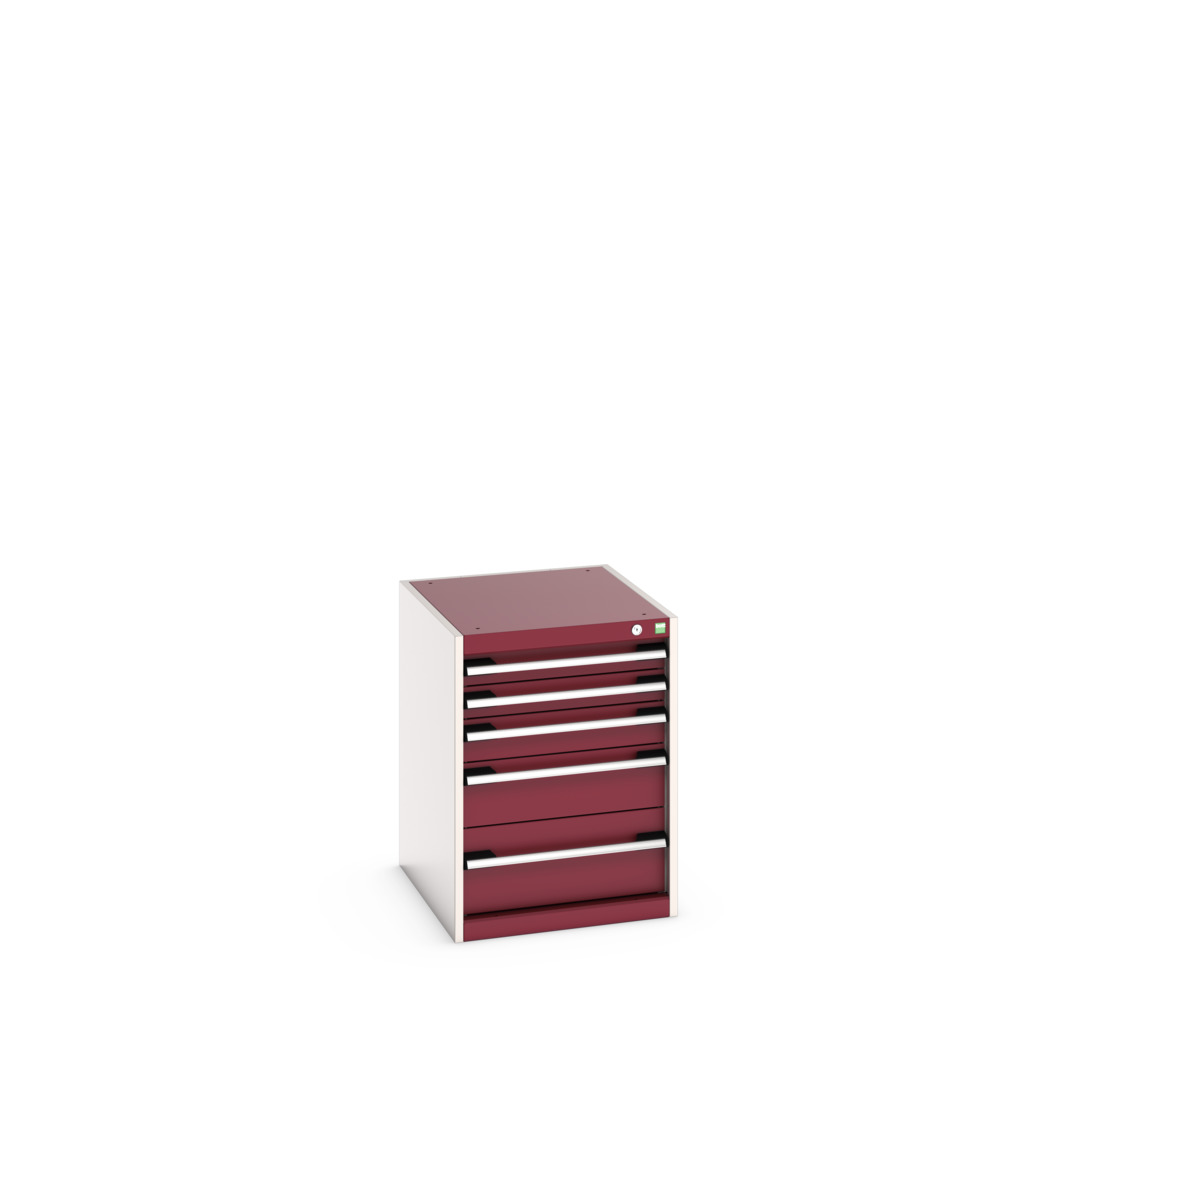 40018027.24V - cubio drawer cabinet